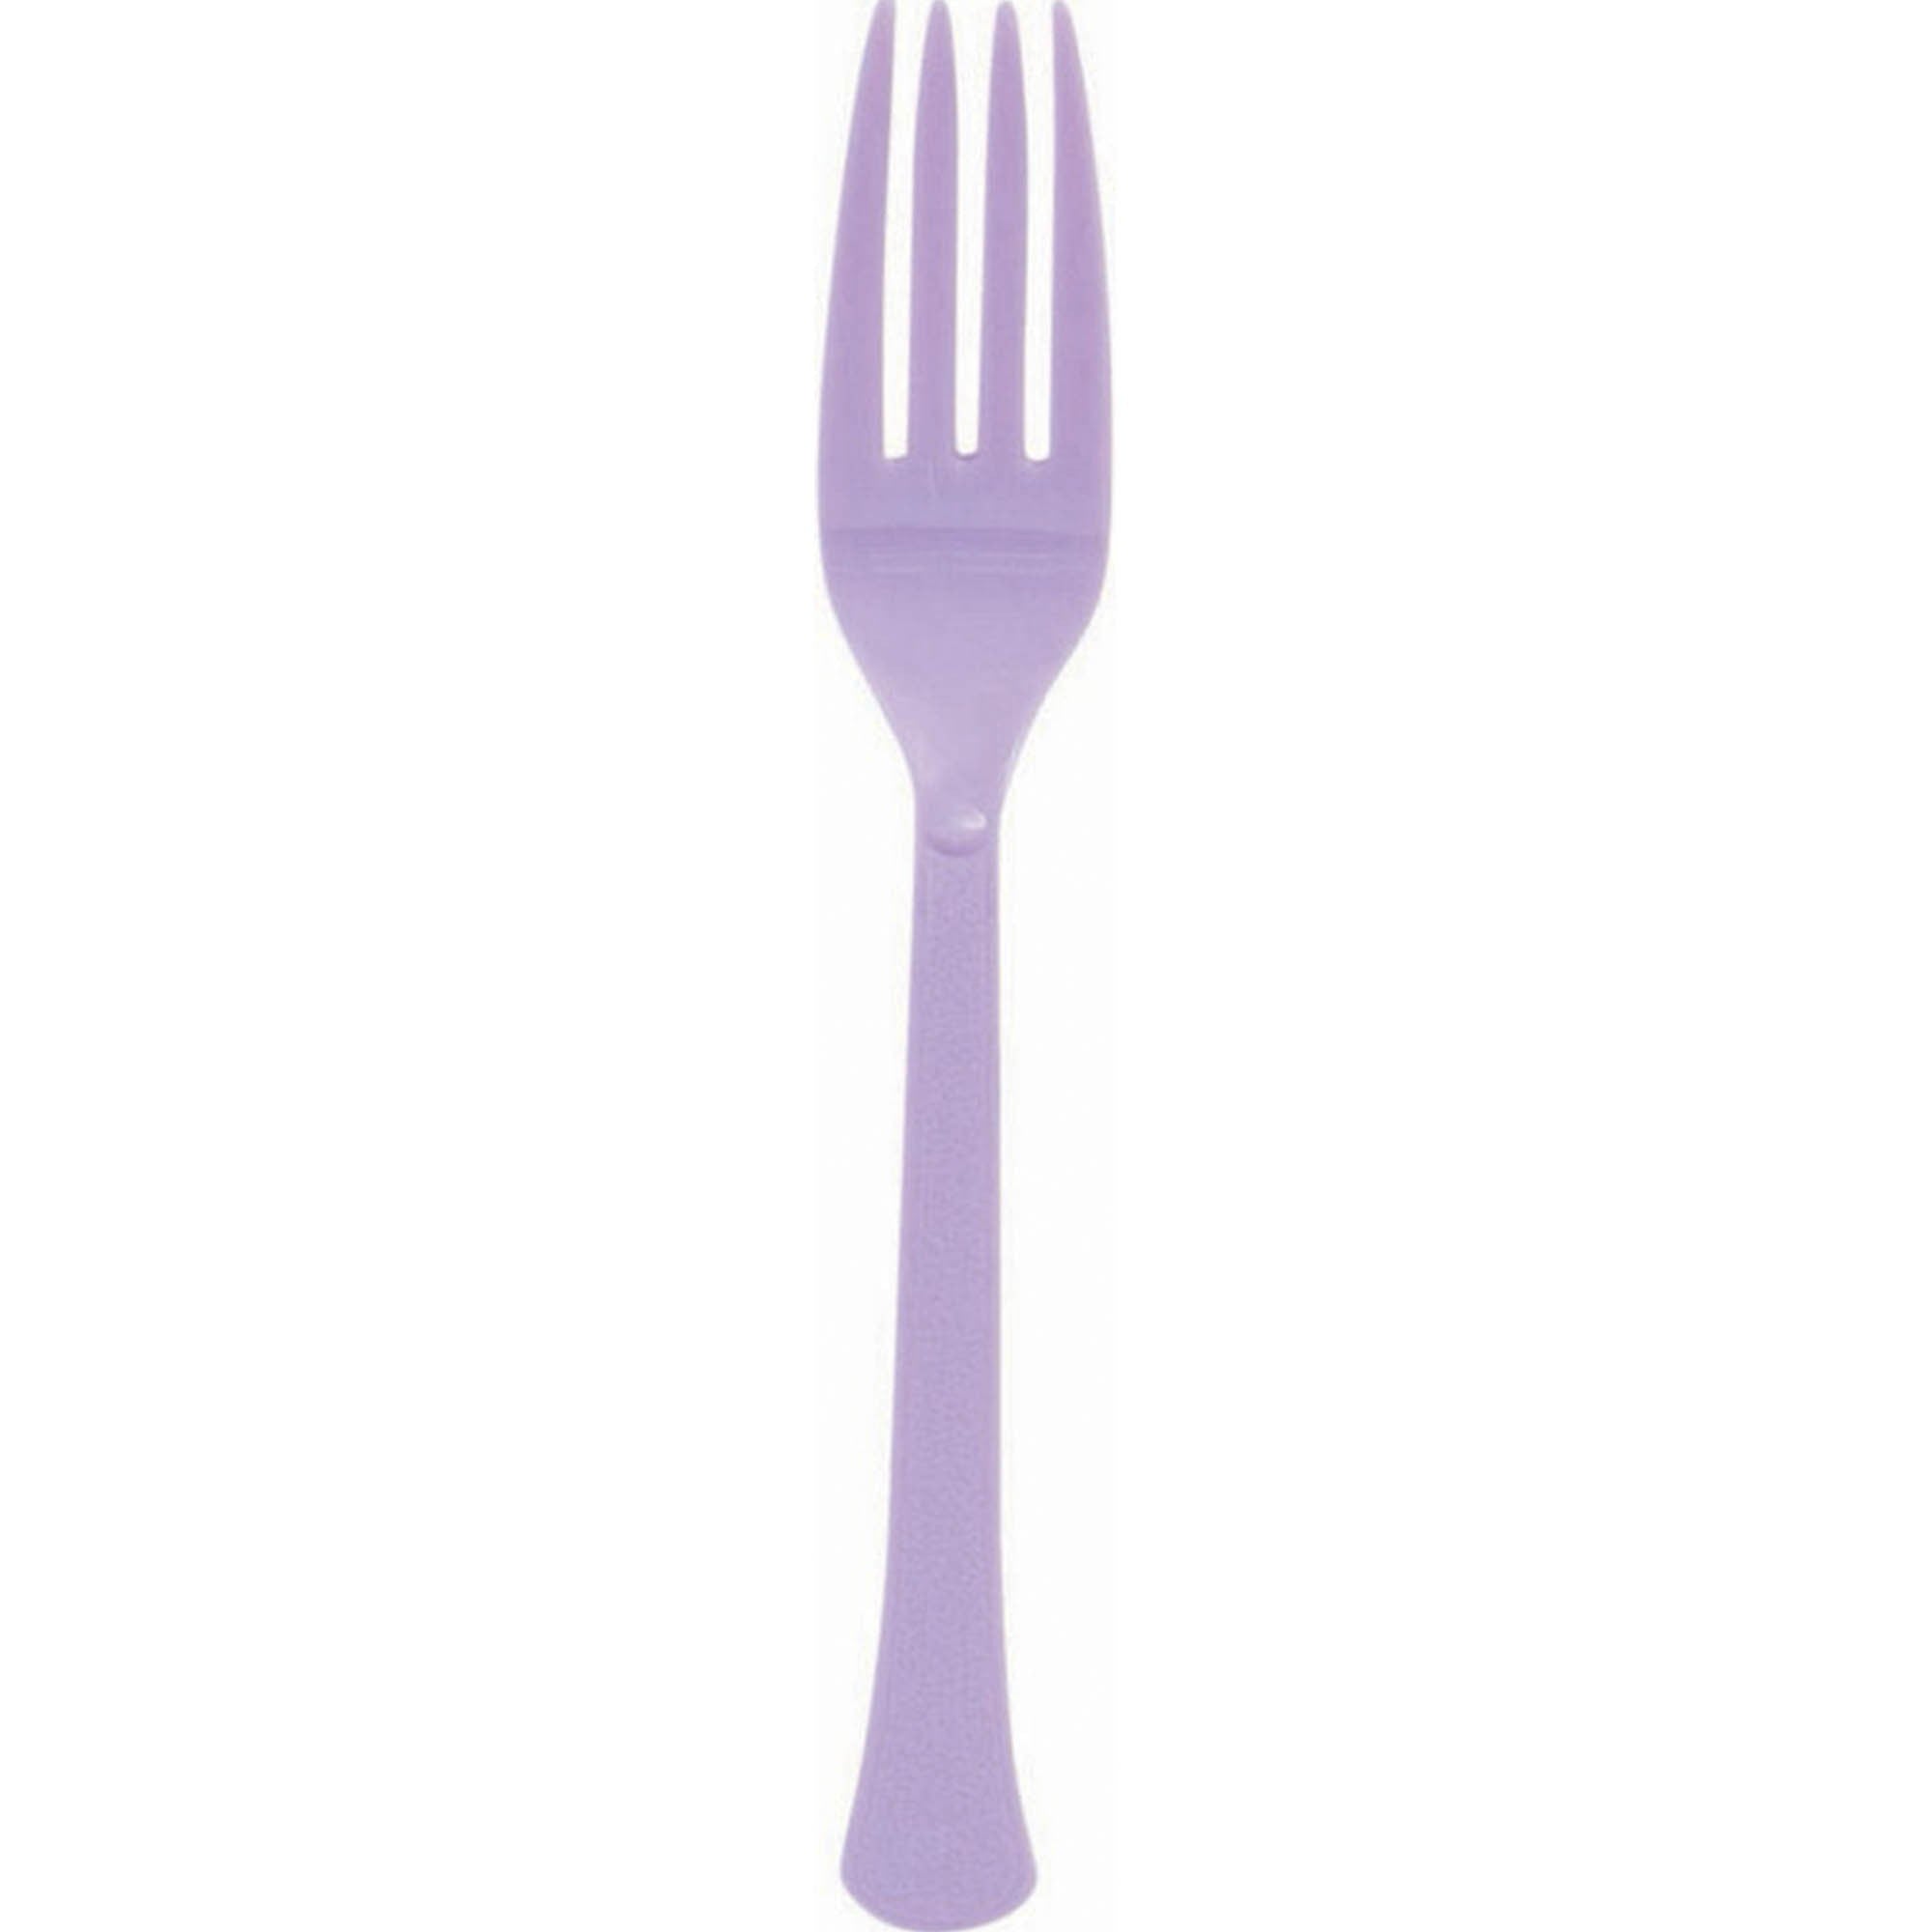 Pastel purple party supplies - lavender forks 